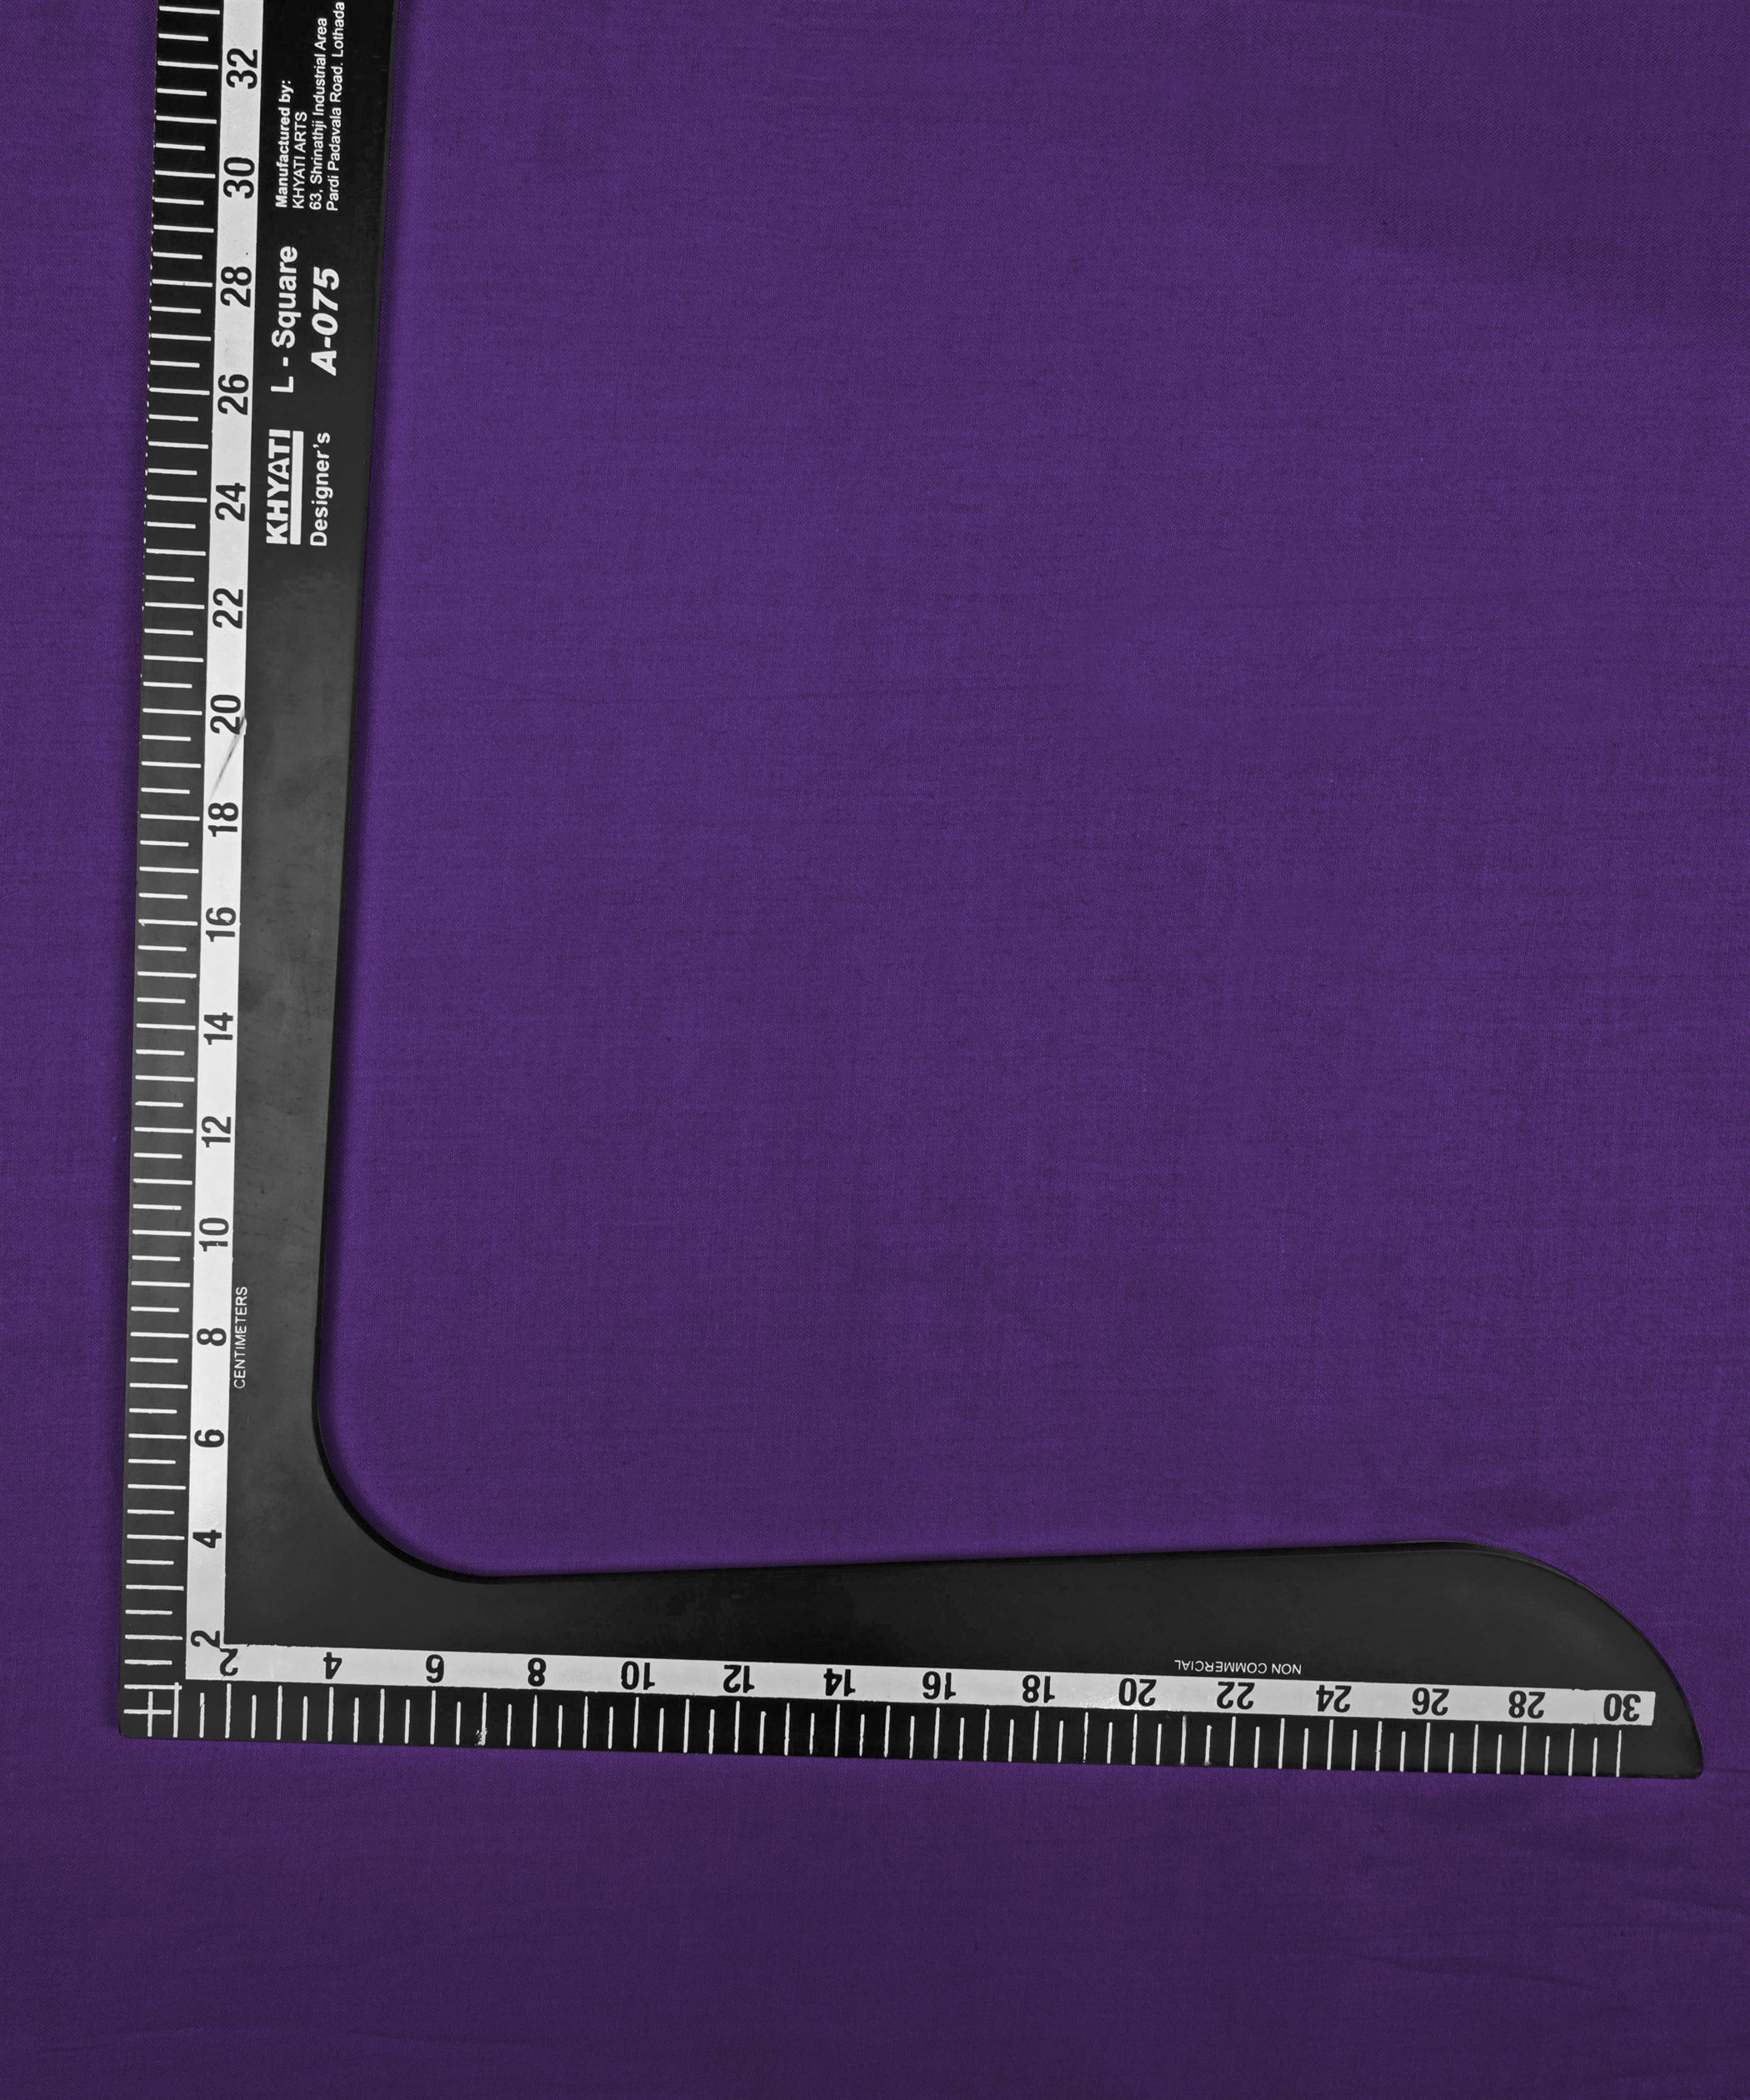 Violet Plain Dyed Cotton Satin Fabric